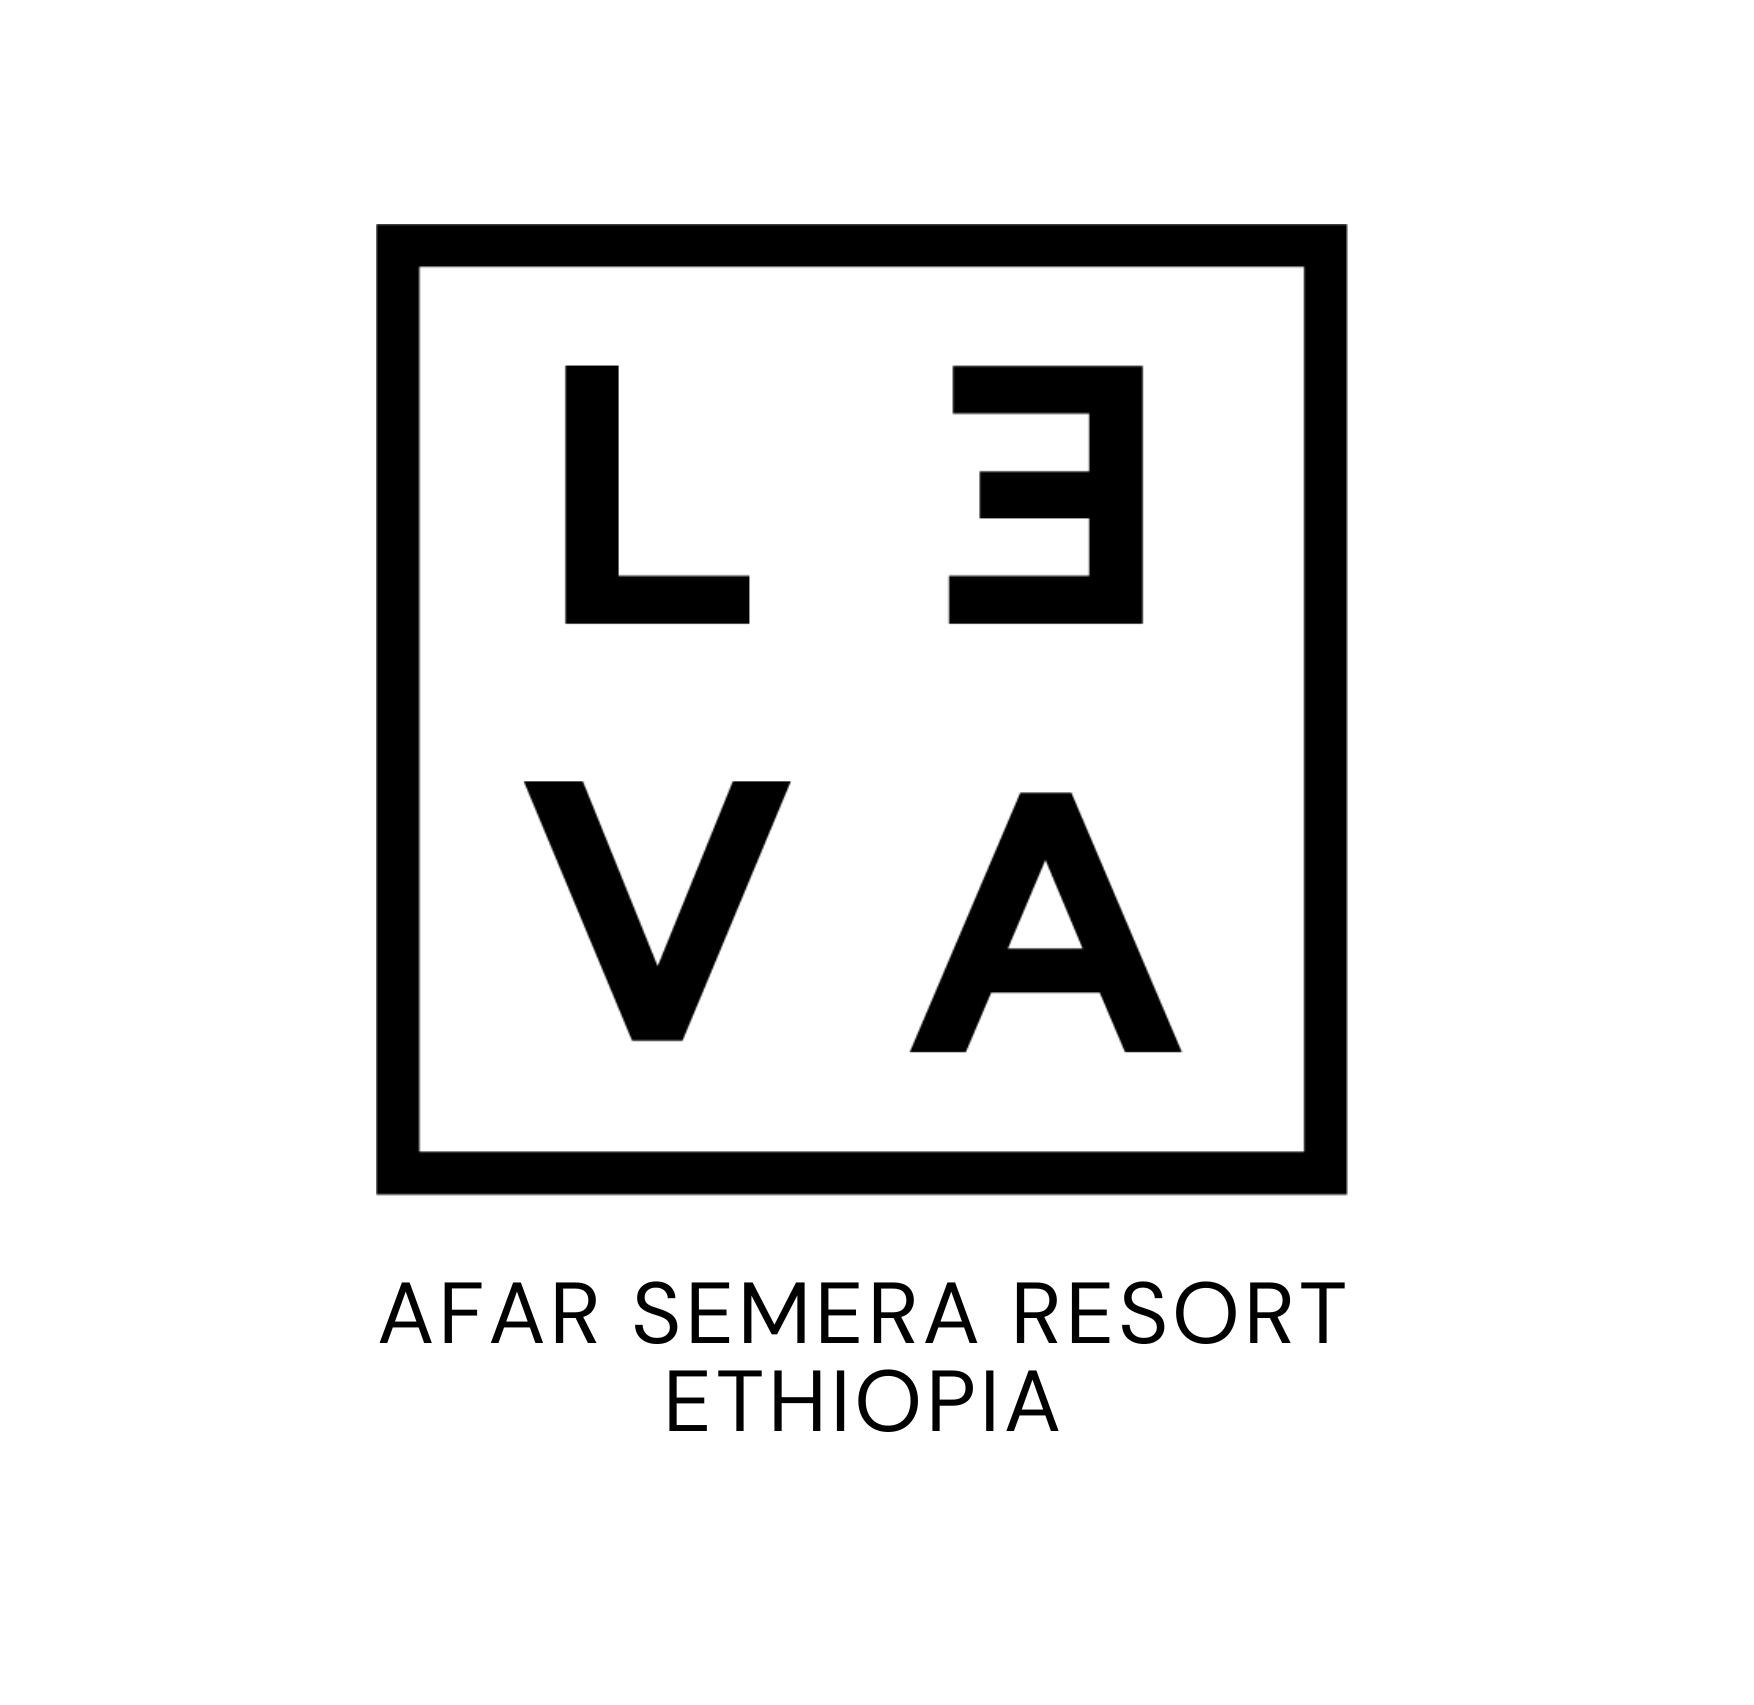 LEVA AFAR SEMERA RESORT